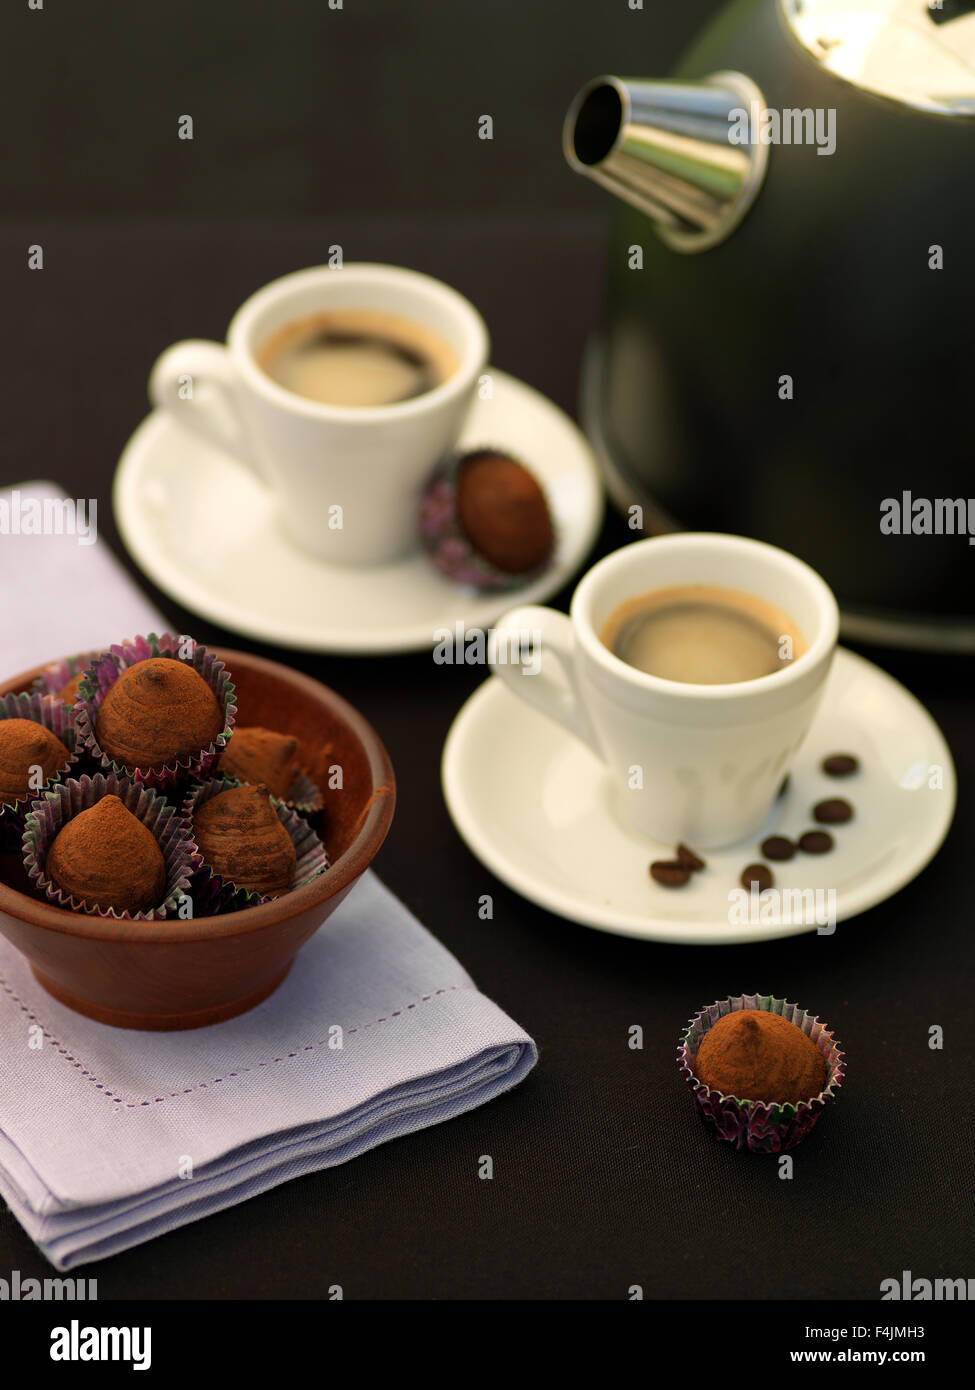 La Suède, Stockholm, Stockholm, deux cafés espresso avec truffes au chocolat Banque D'Images